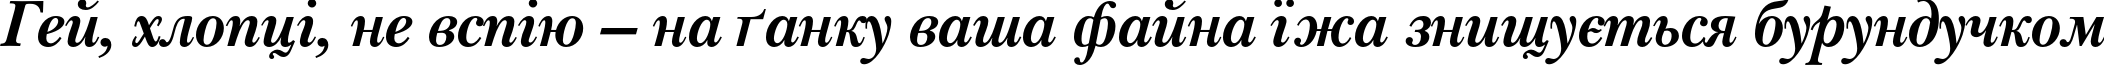 Пример написания шрифтом NewBaskervilleC Bold Italic текста на украинском